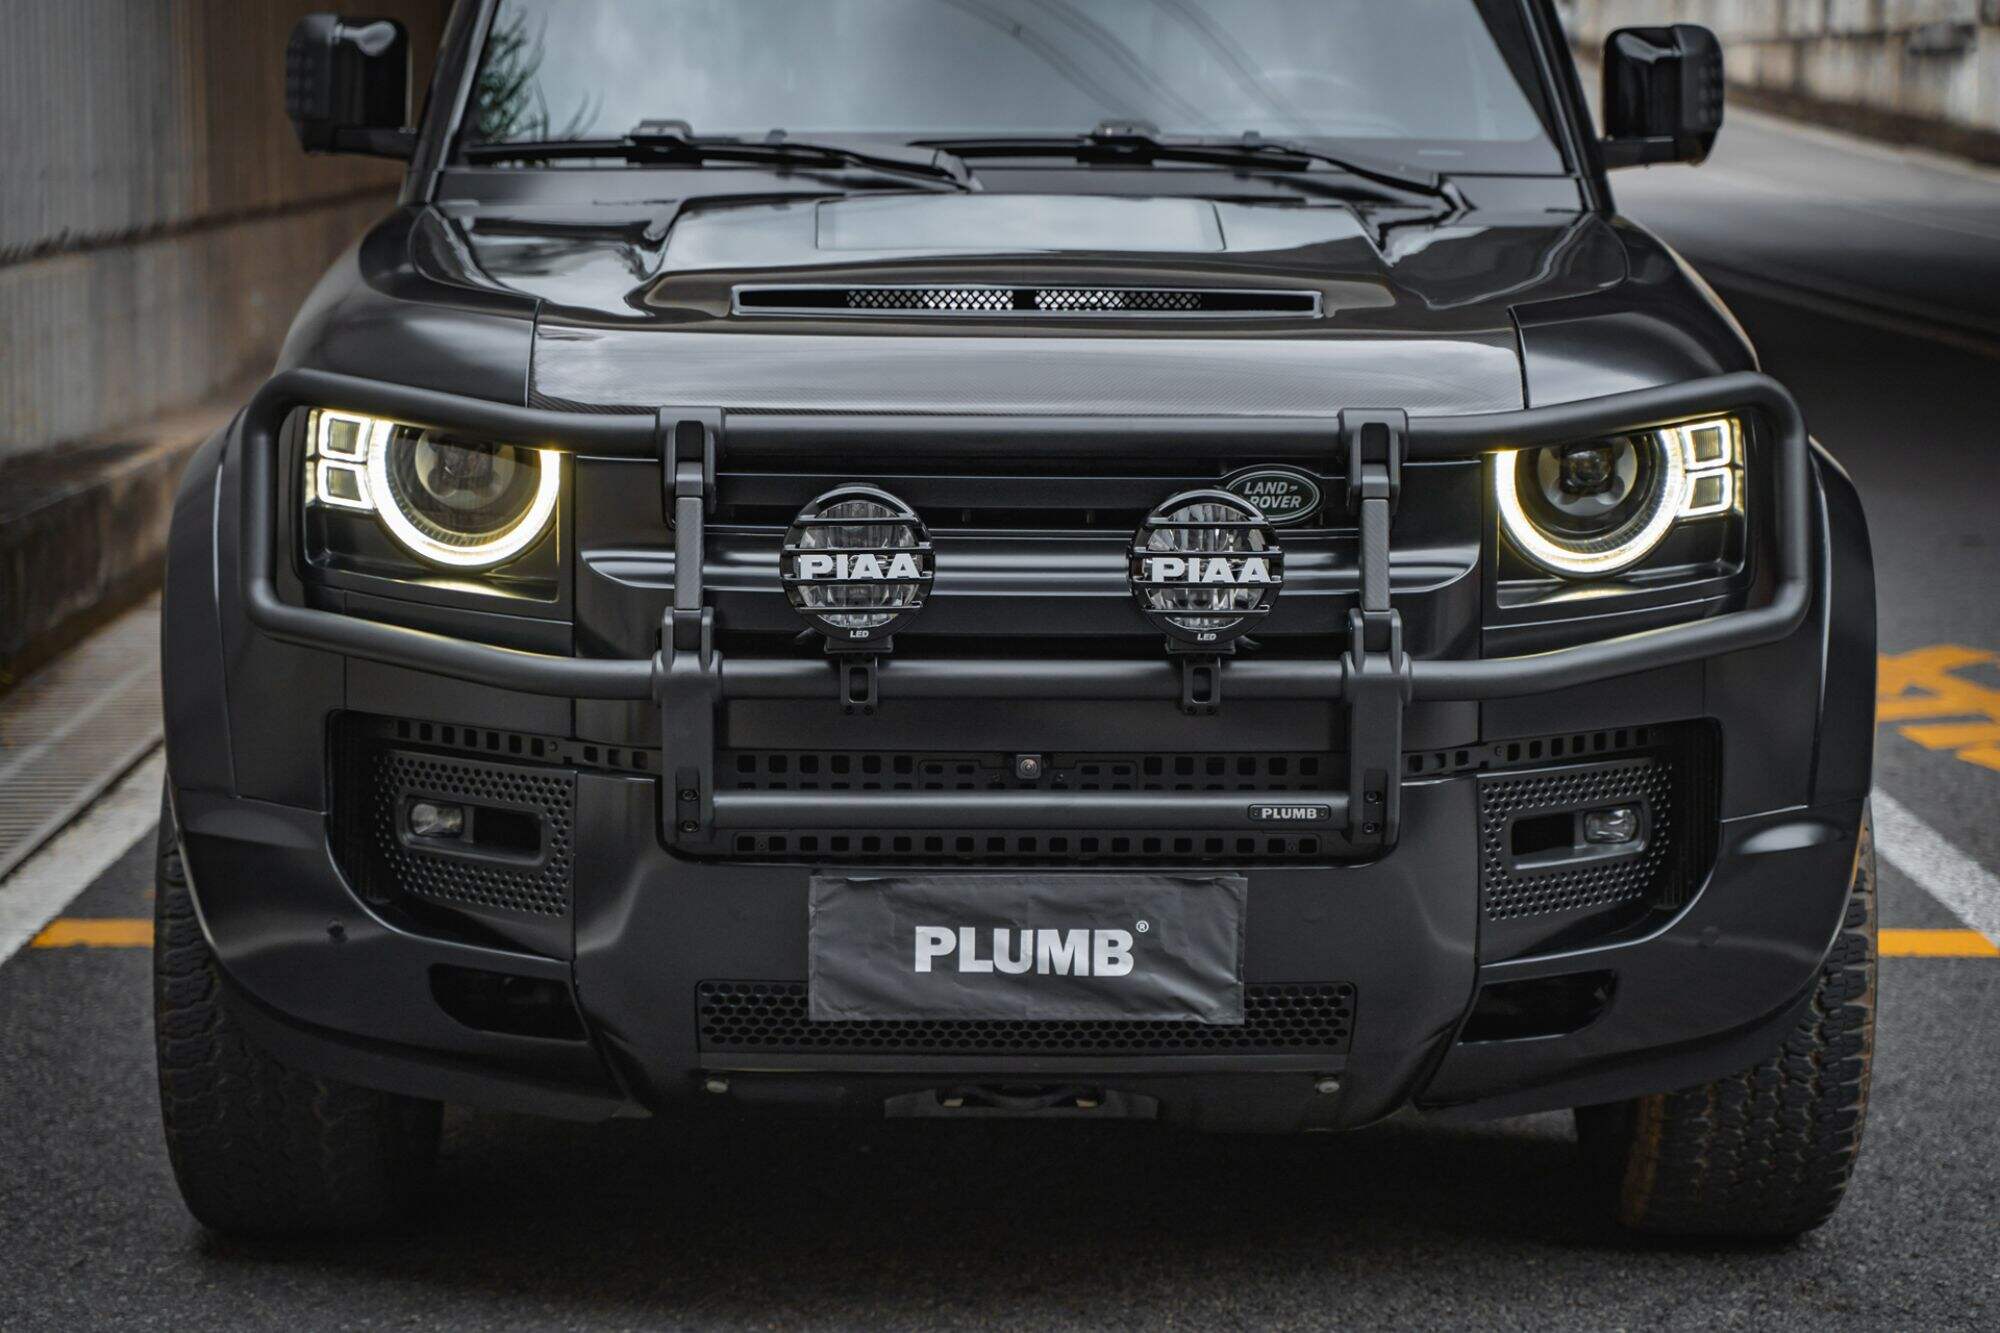 Plumb Front  Bumper Upgrade Kit For Land Rover Defender 90/110/130